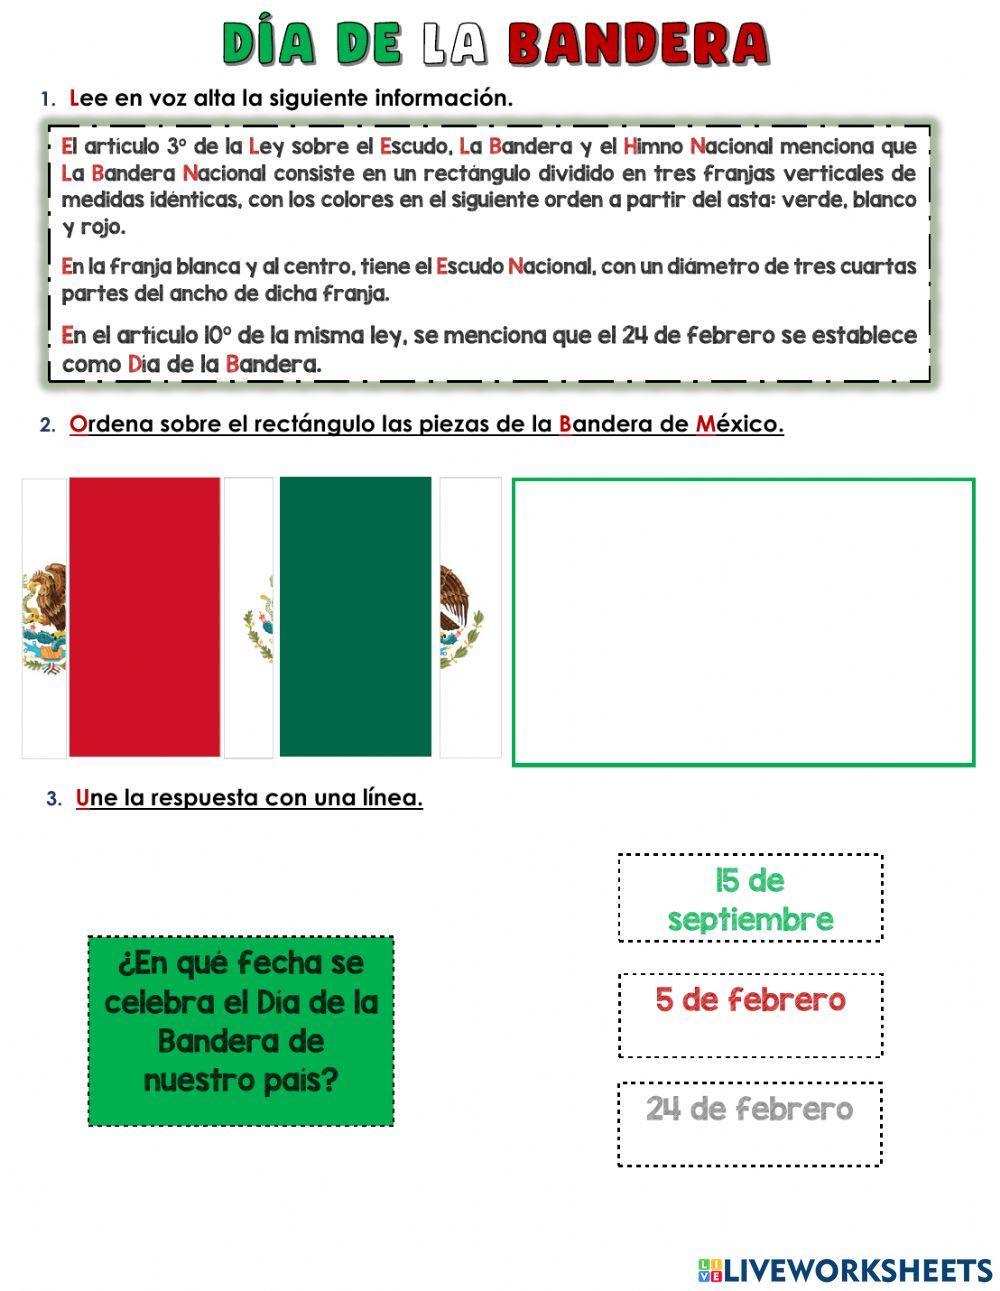 Día de la Bandera Mexicana